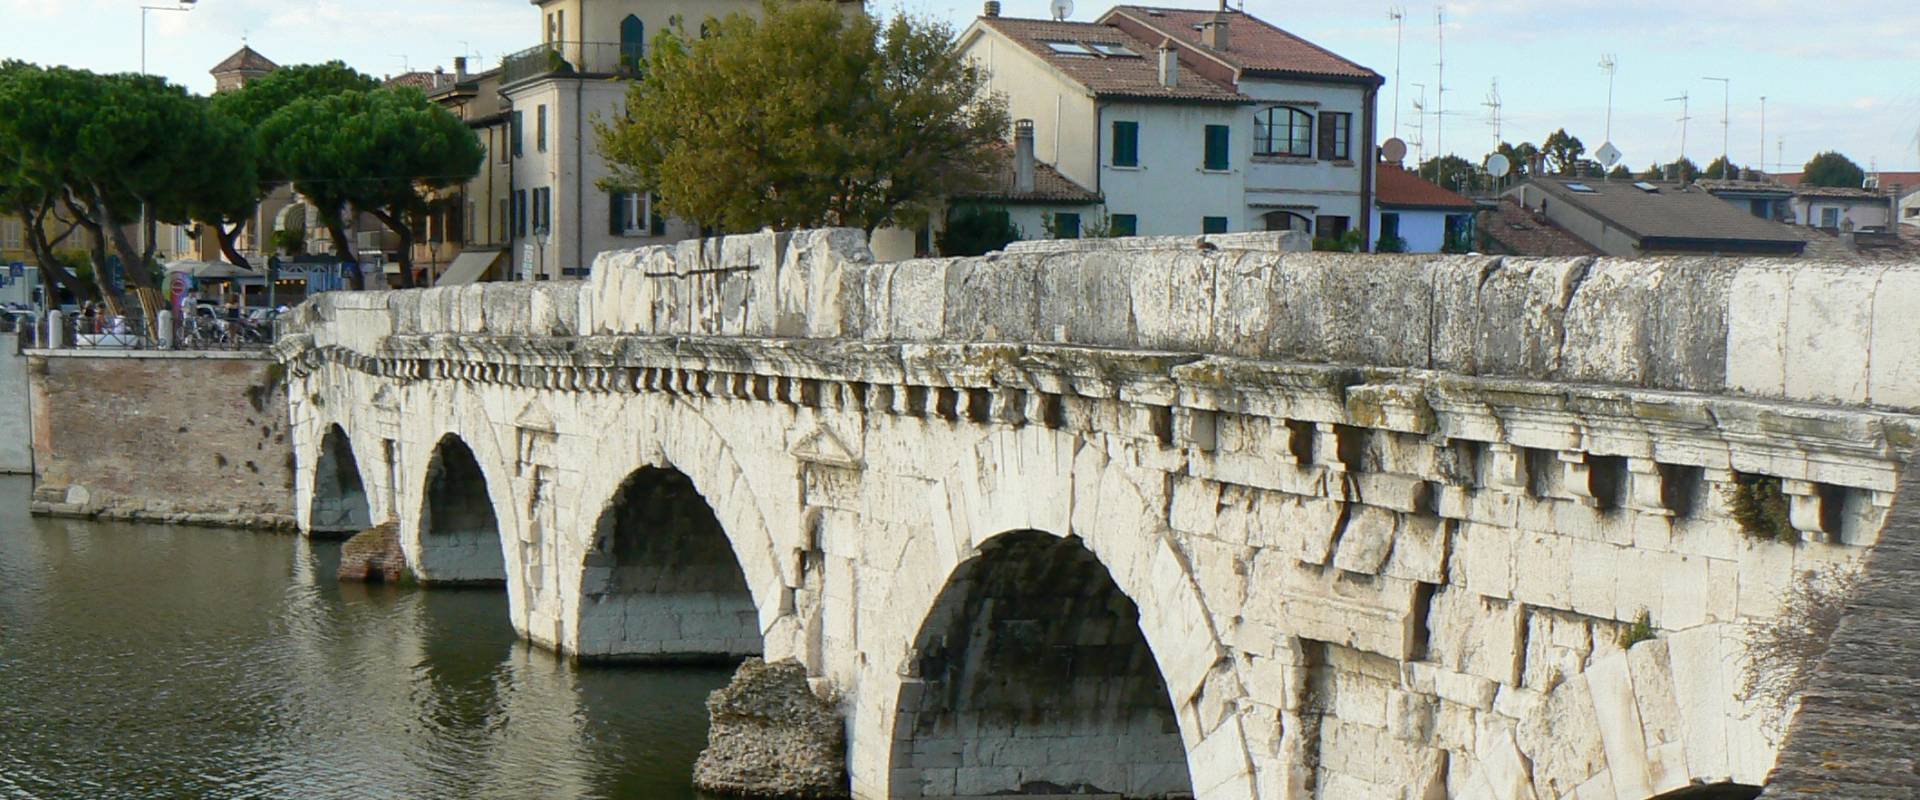 Ponte di Tiberio Rimini 1 foto di Paperoastro